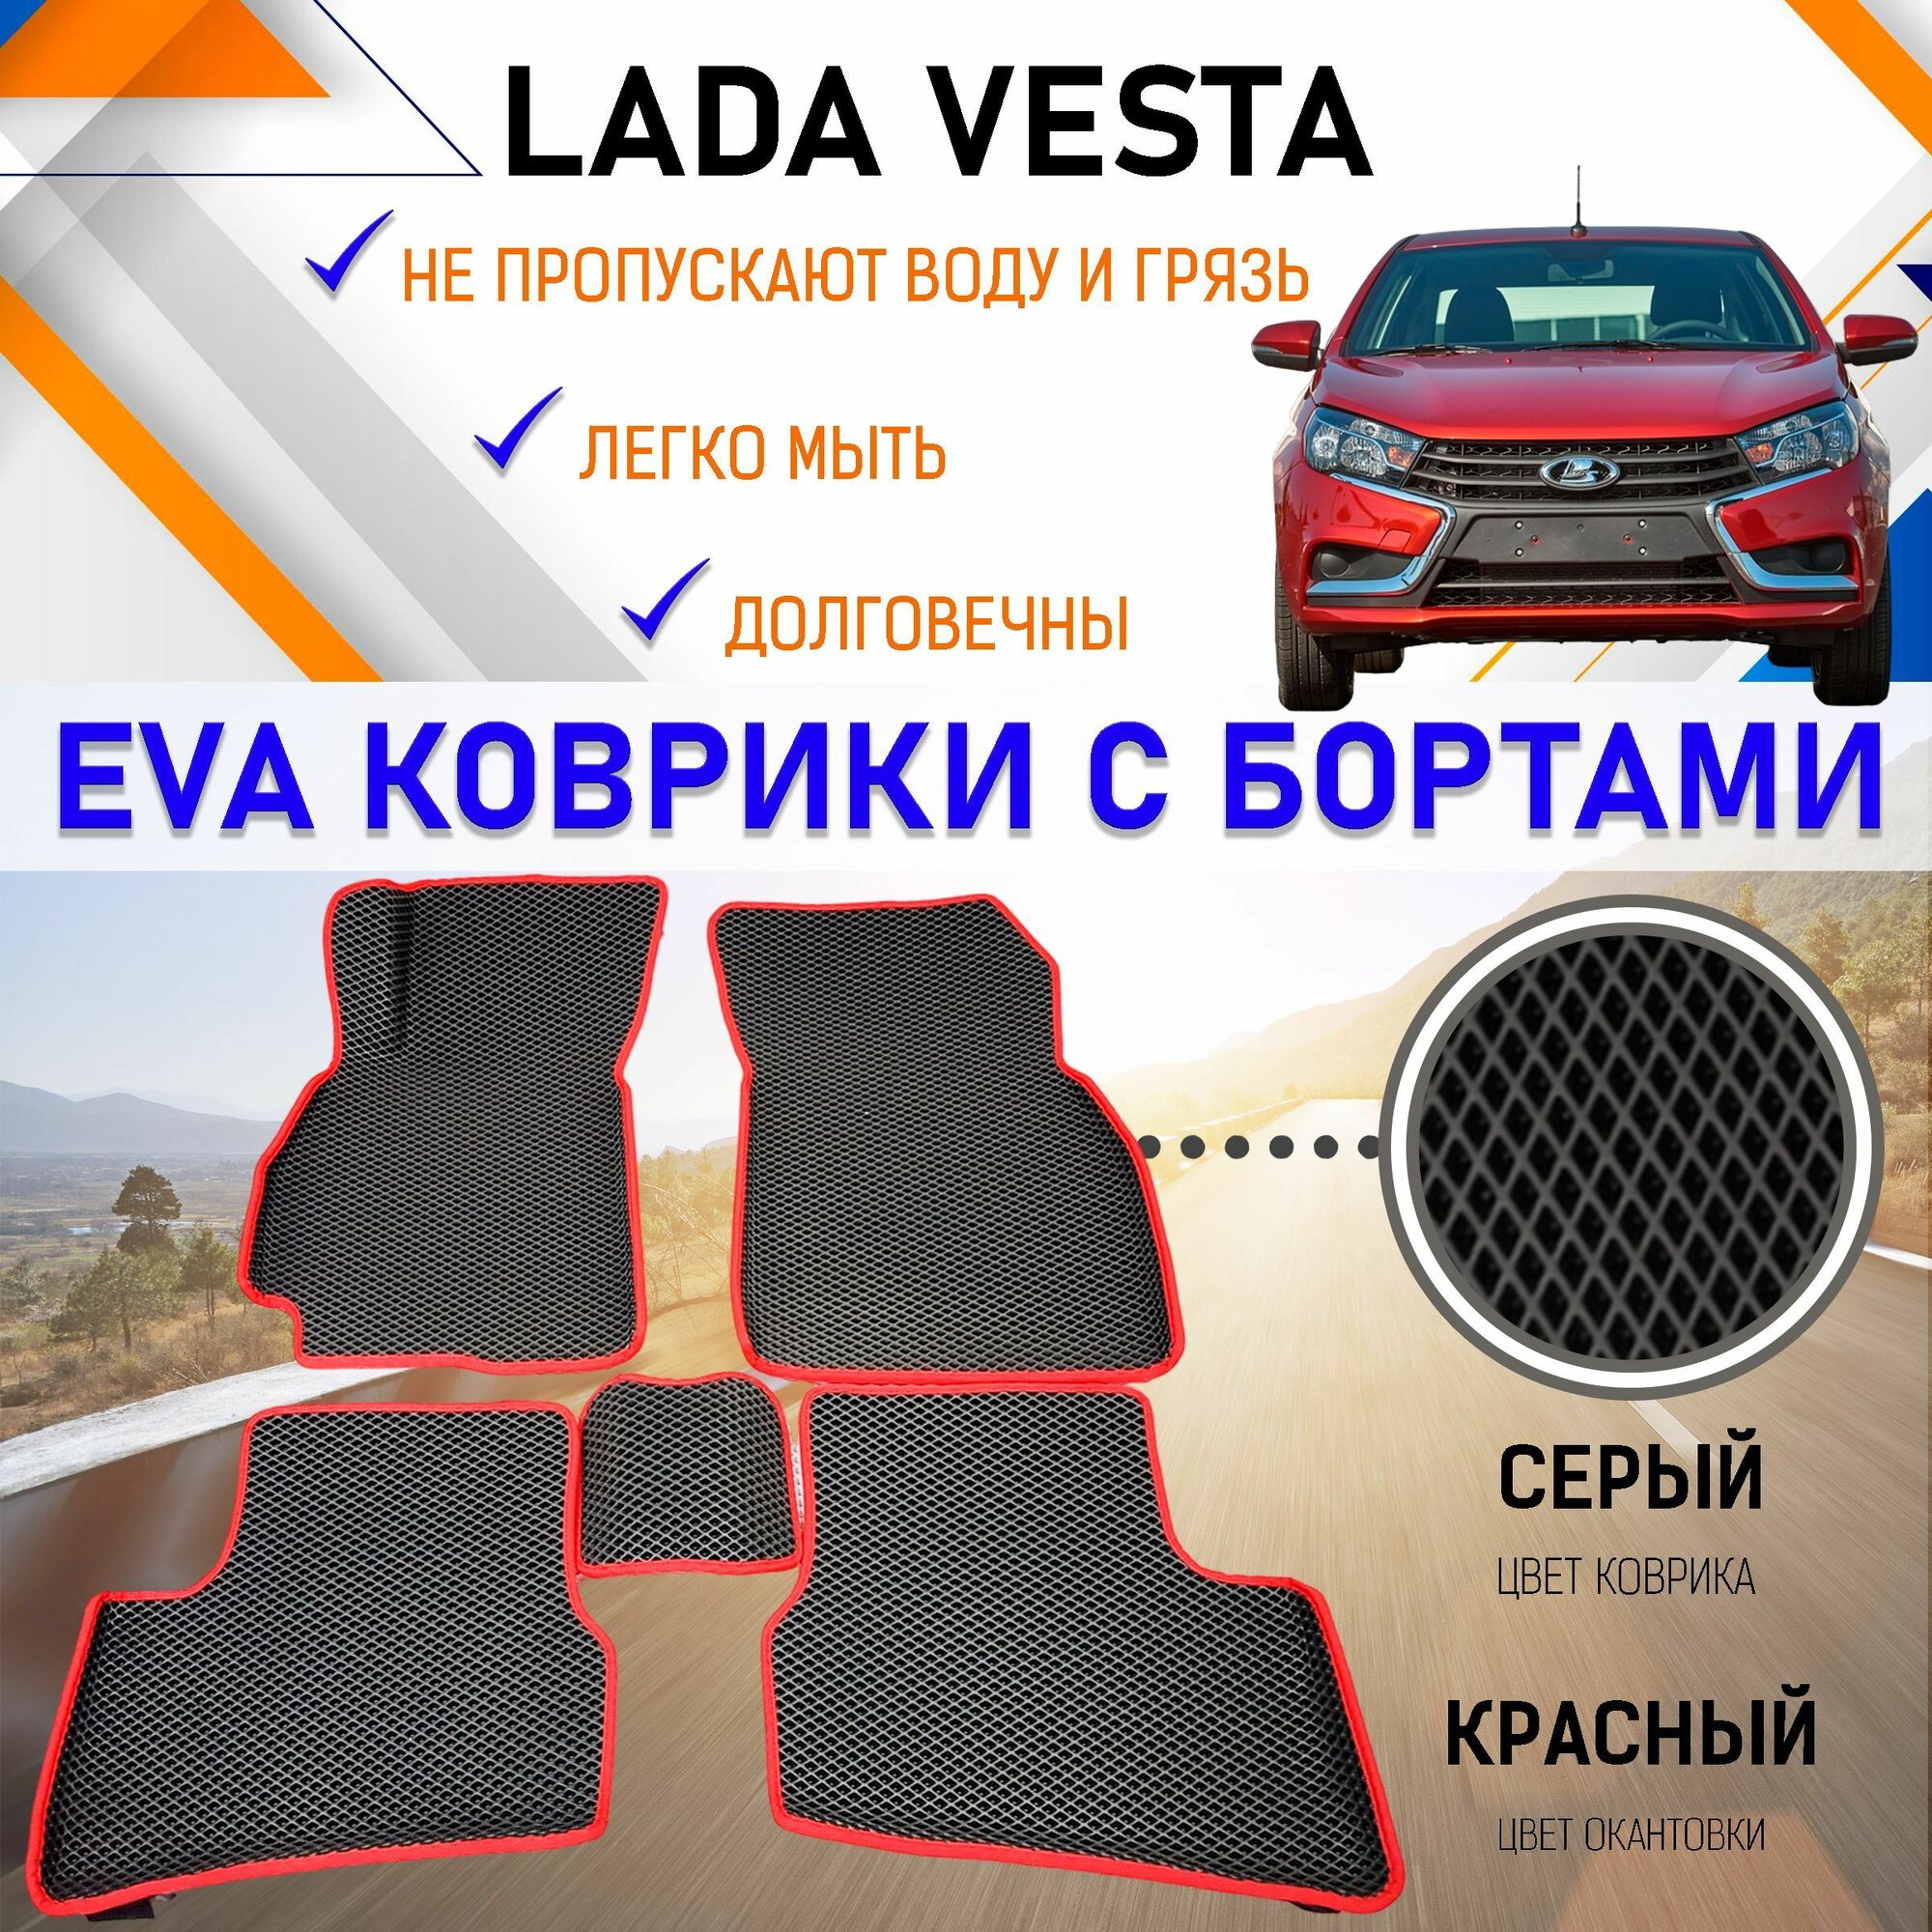 Автомобильные коврики ЕVA, EVO, ЭВО, ЭВА, ЕВА, ЕВО с бортами в салон машины Лада Веста Lada Vesta, резиновый настил для защиты салона авто от грязи и воды